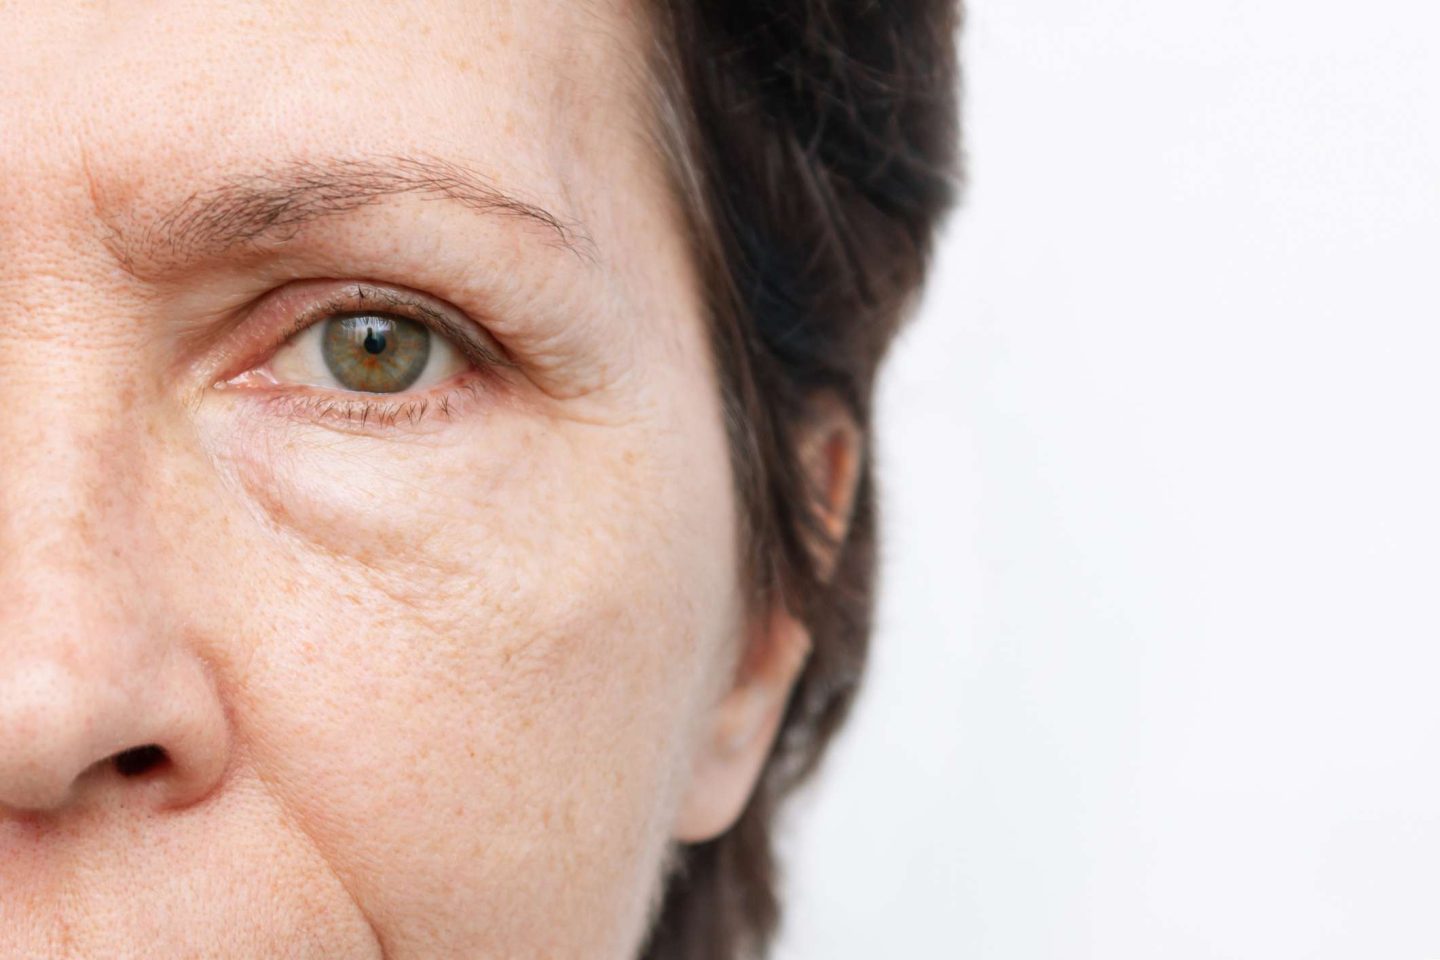 انتفاخ العين: الأسباب والأعراض والتشخيص والعلاج